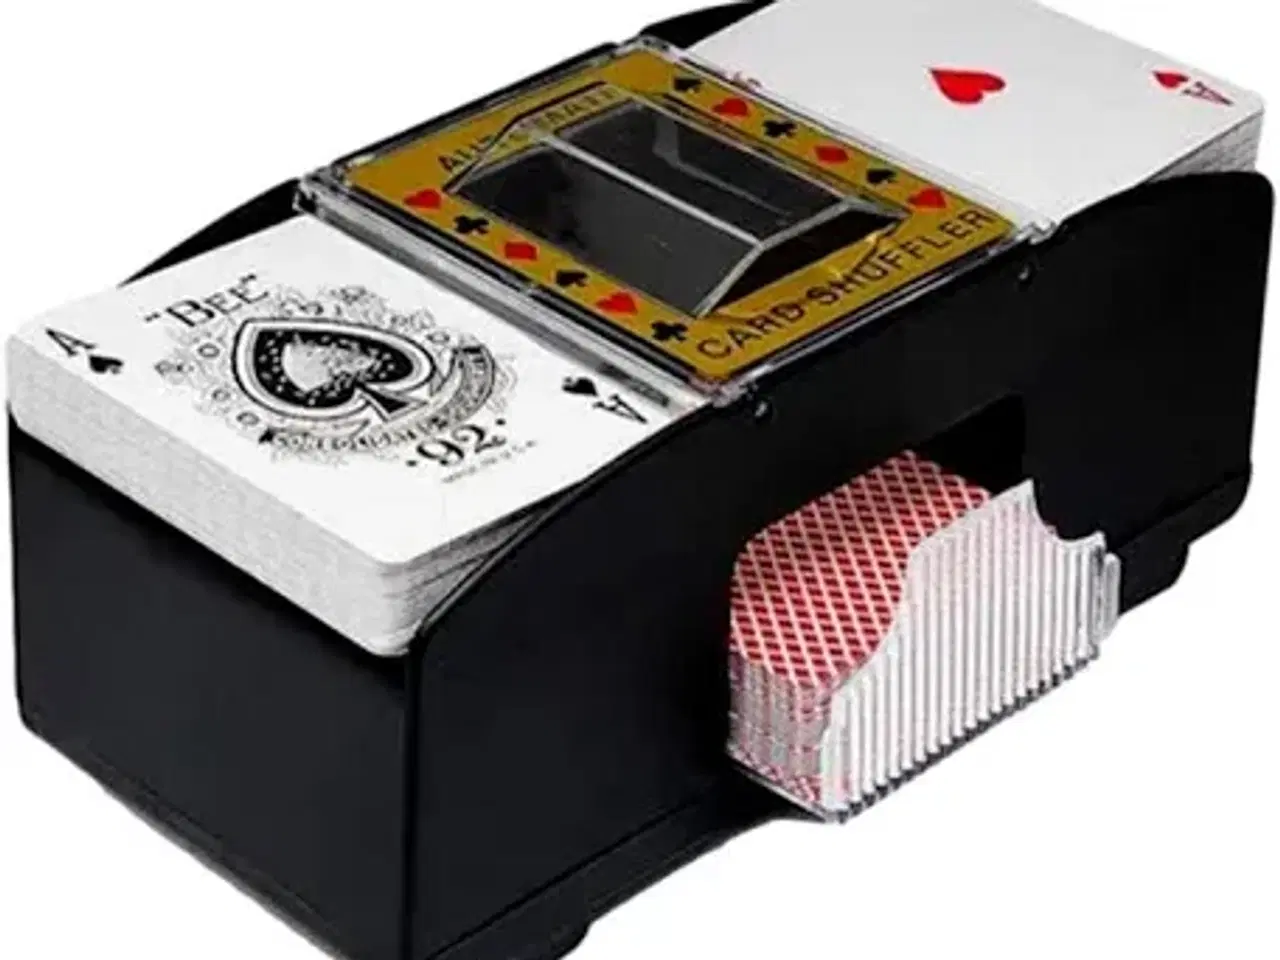 Billede 4 - FCK poker sæt med fck logo på